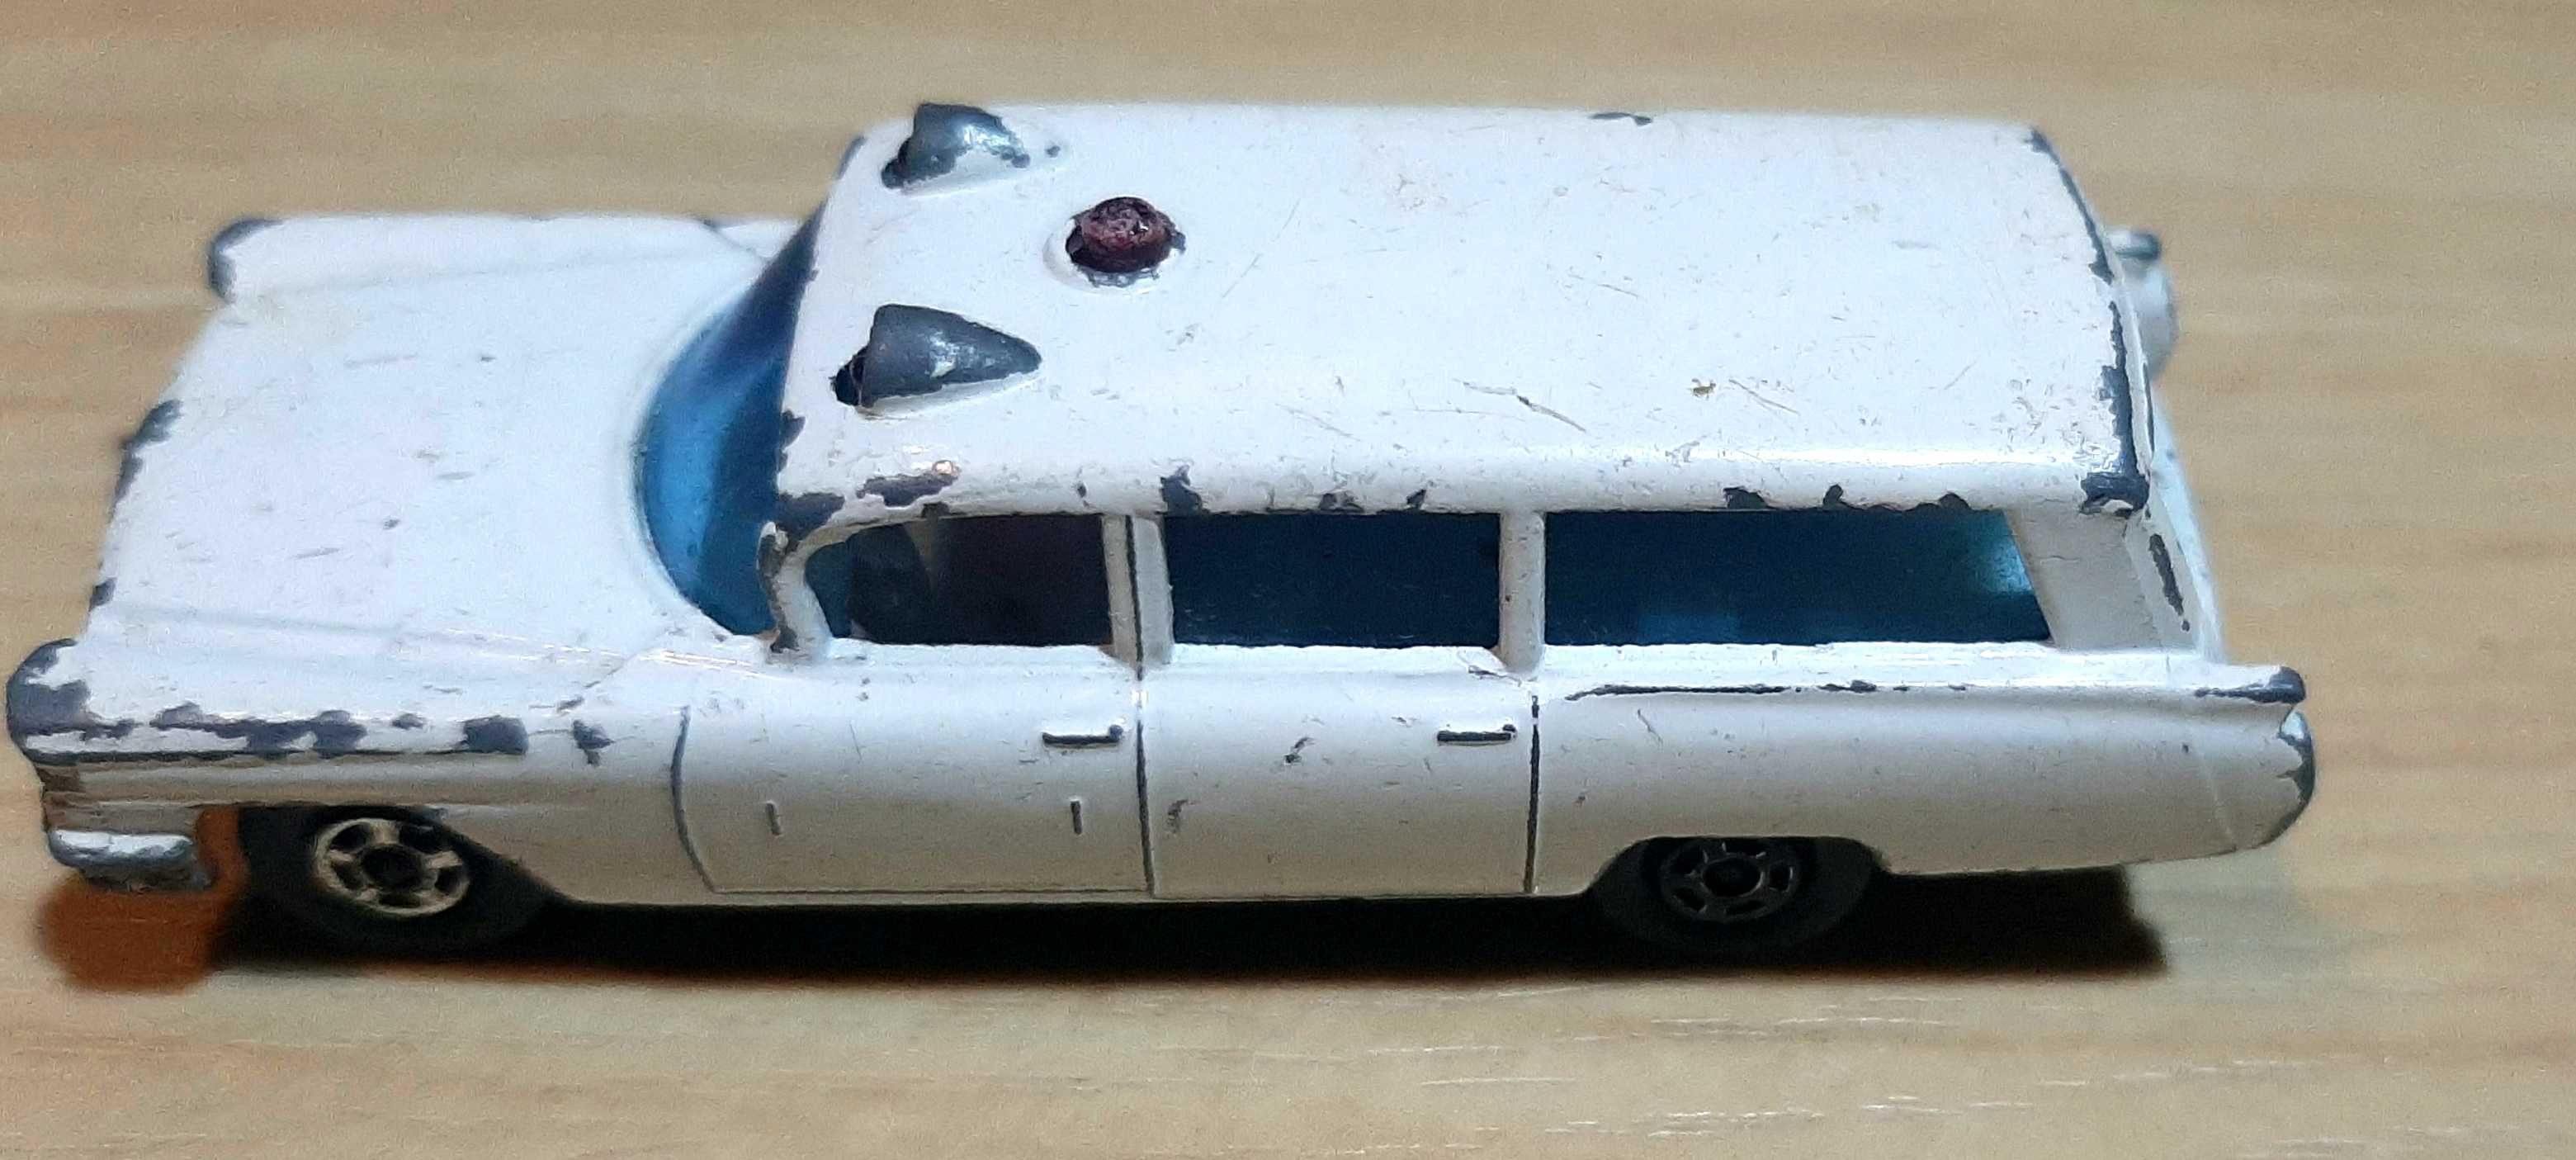 Miniatura antiga Lesney Cadillac ambulance